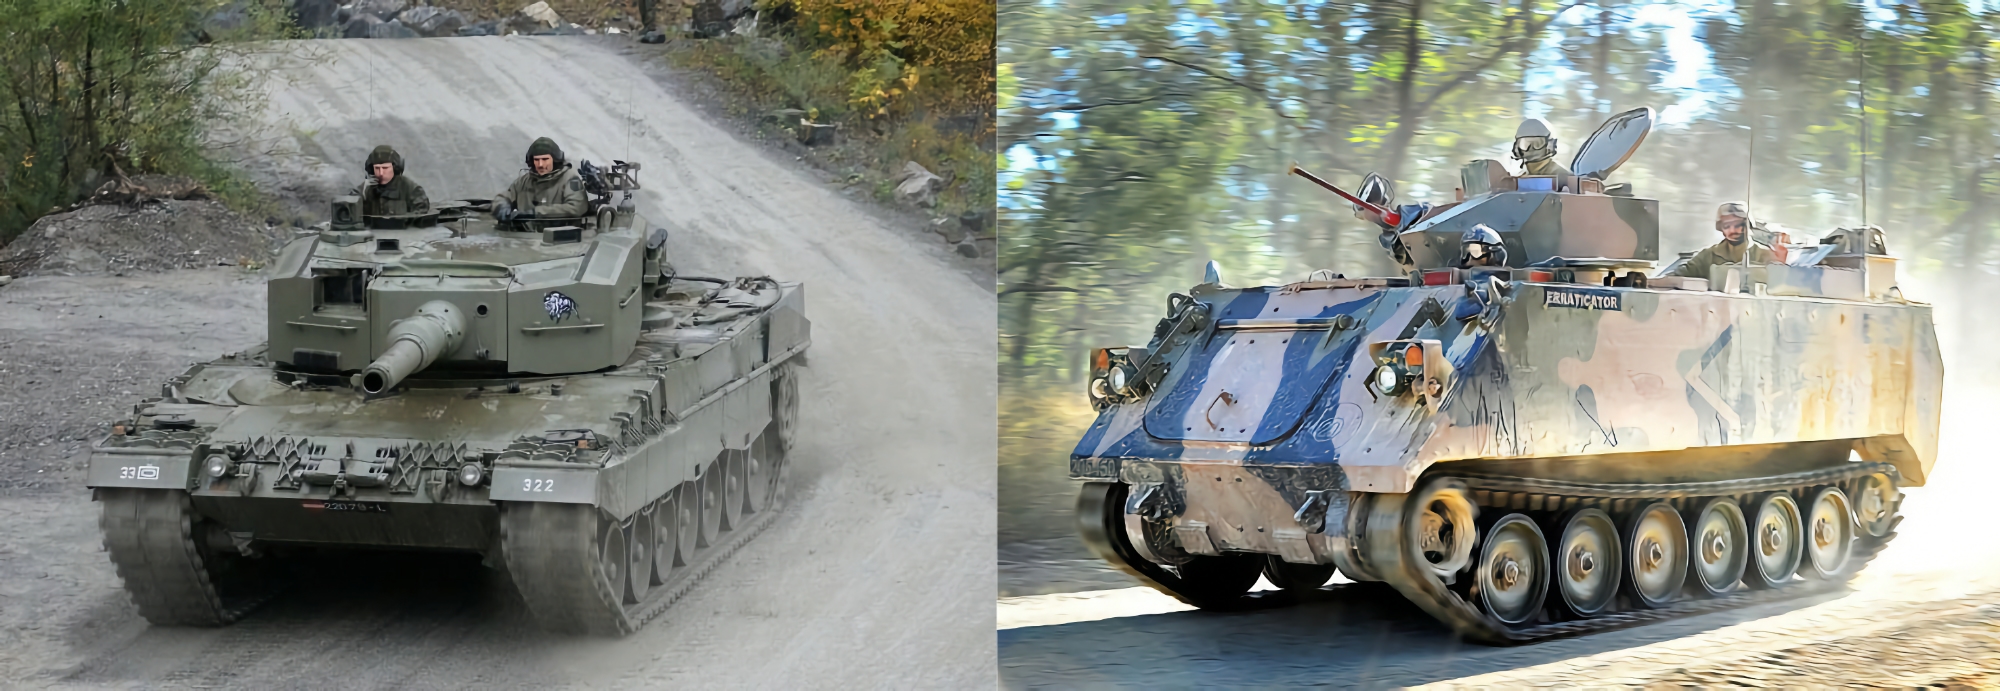 L'Espagne commence à transférer des chars Leopard 2A4 et des véhicules blindés de transport de troupes M113 à l'Ukraine